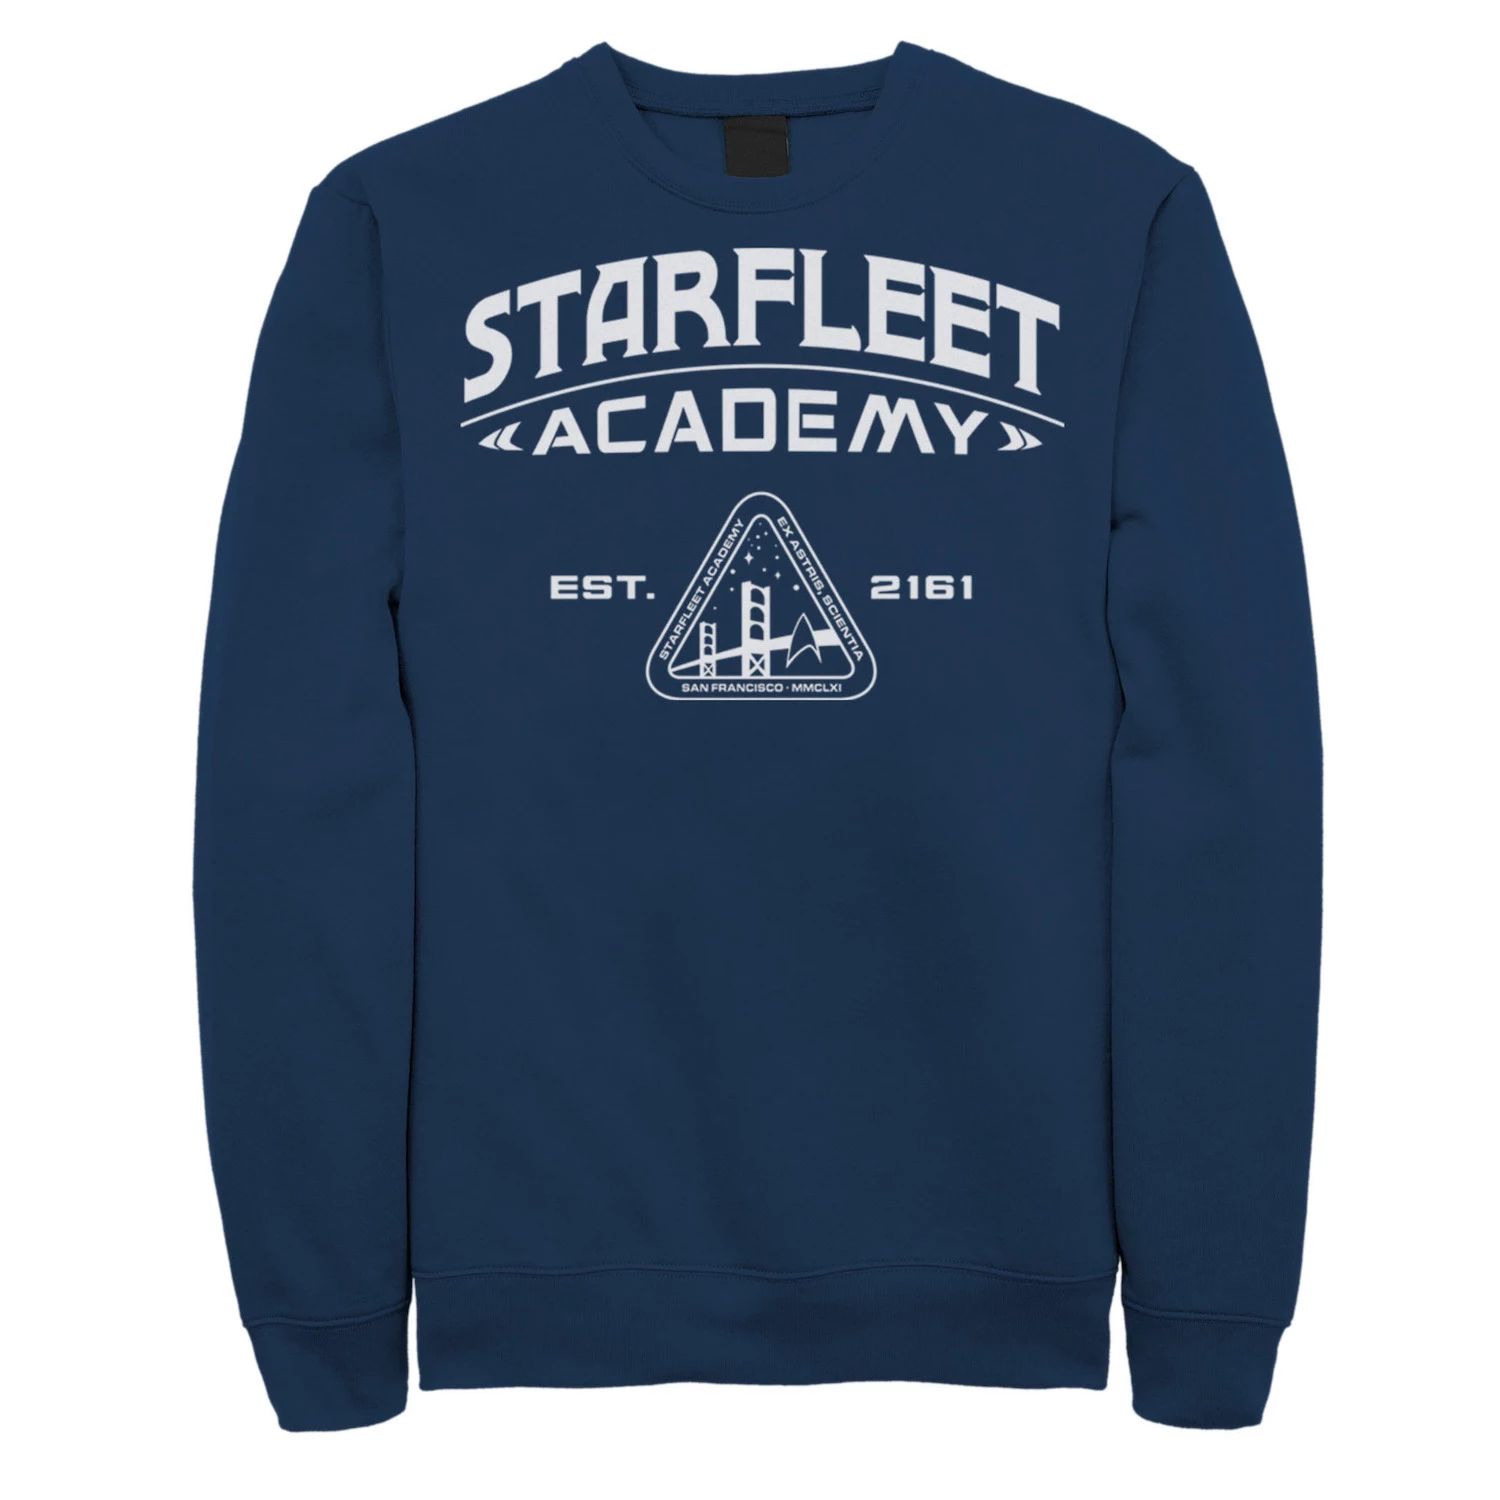 Мужская винтажная толстовка Star Trek Starfleet Academy 2161 Licensed Character